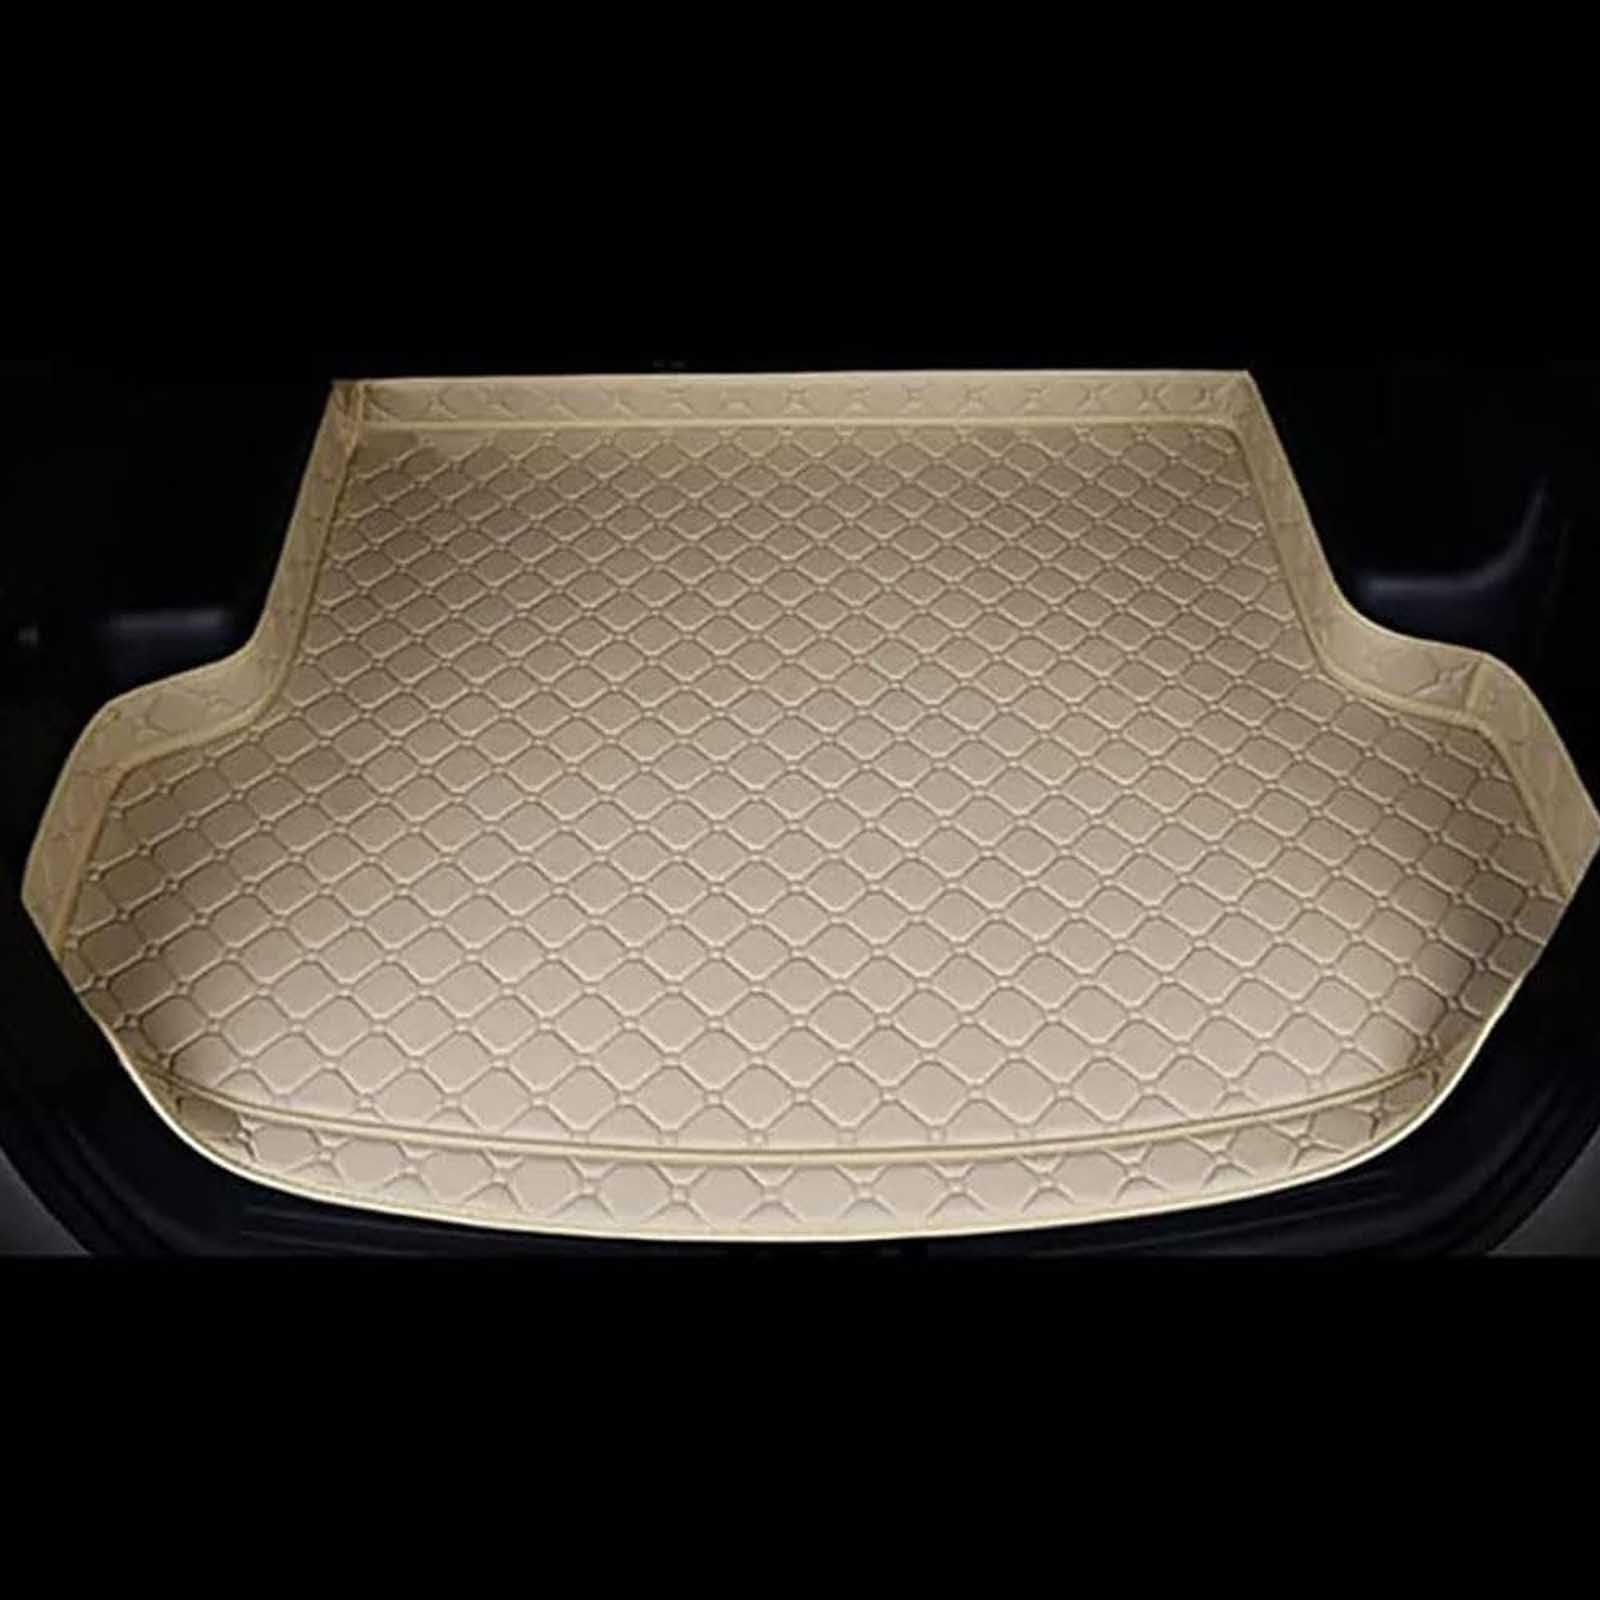 Auto Kofferraummatte FüR Suzuki Swift 2013-2018, Leder Kofferraum Schutzmatten Teppich Kratzfest rutschfest Kofferraum Zubehör, B/Beige von MaKeMoney